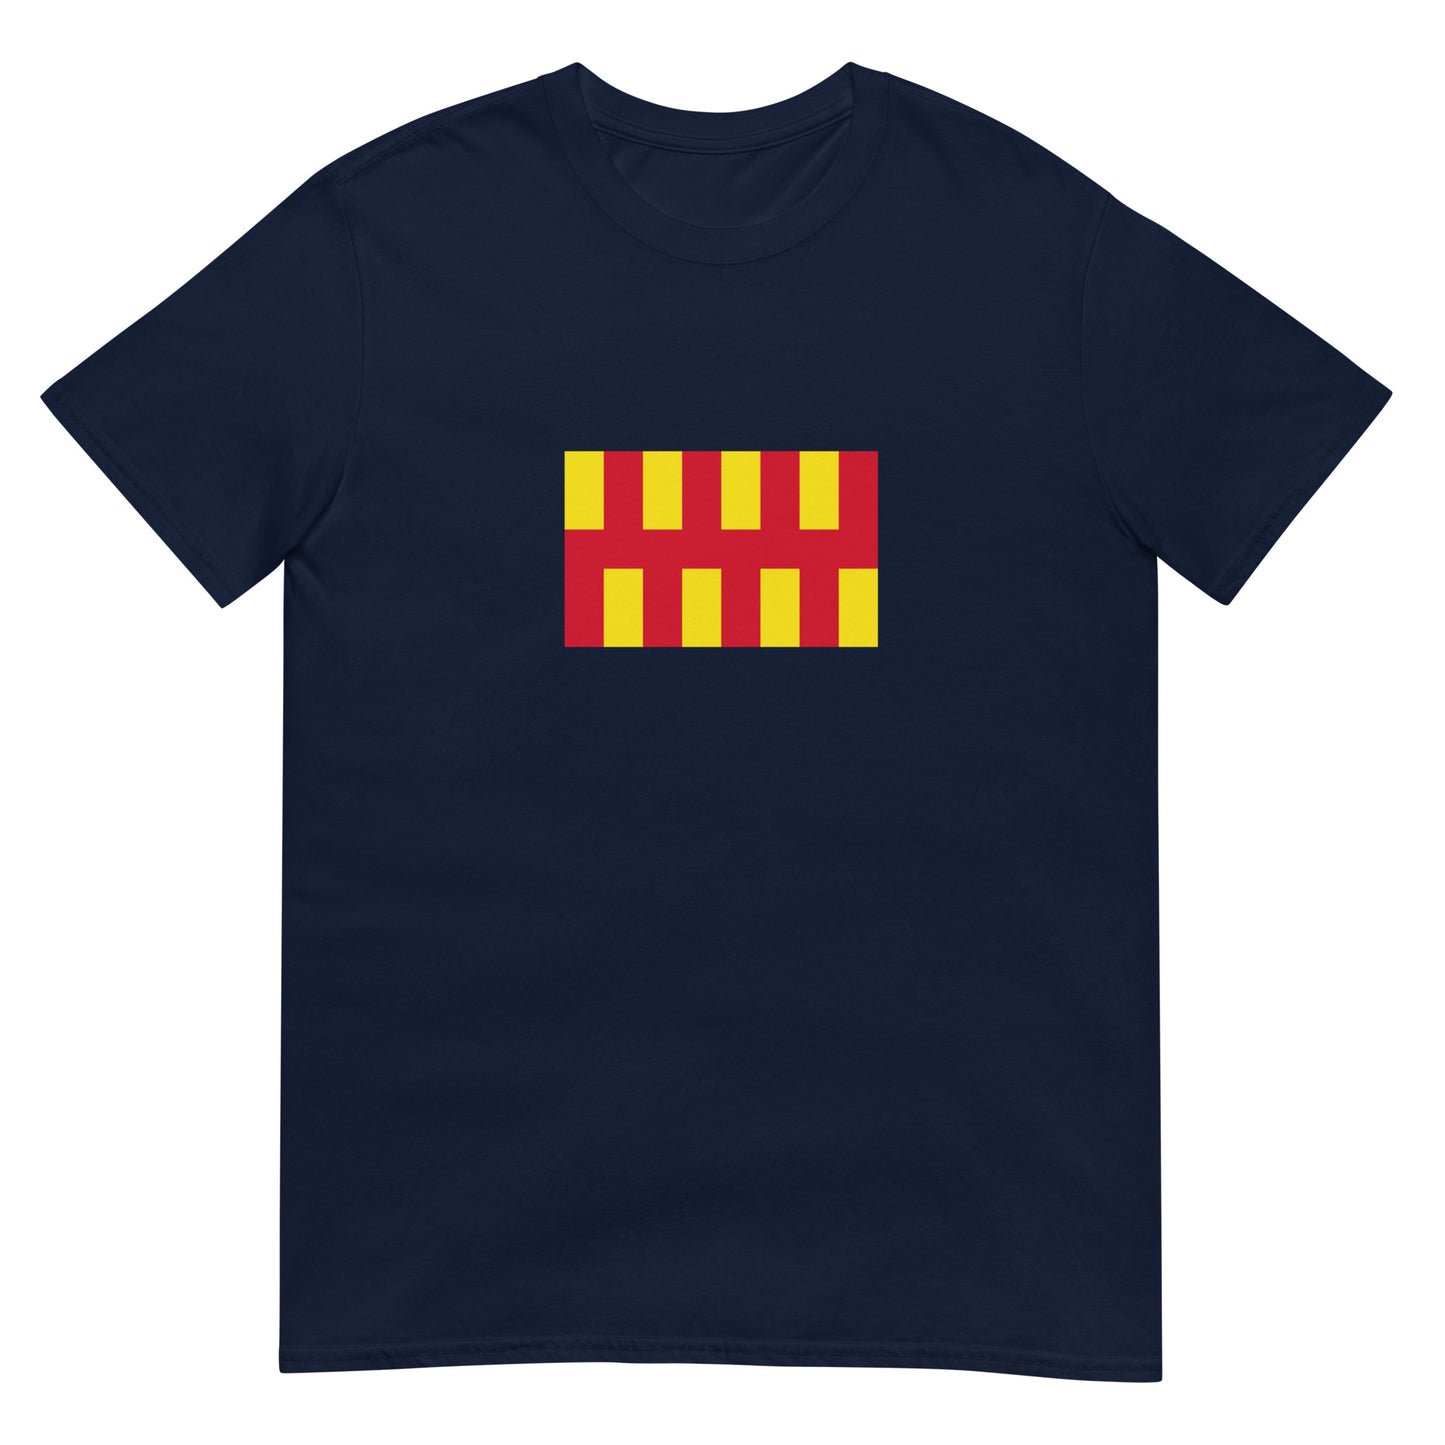 Scotland - Kingdom of Northumbria (654-954) | Historical Flag Short-Sleeve Unisex T-Shirt